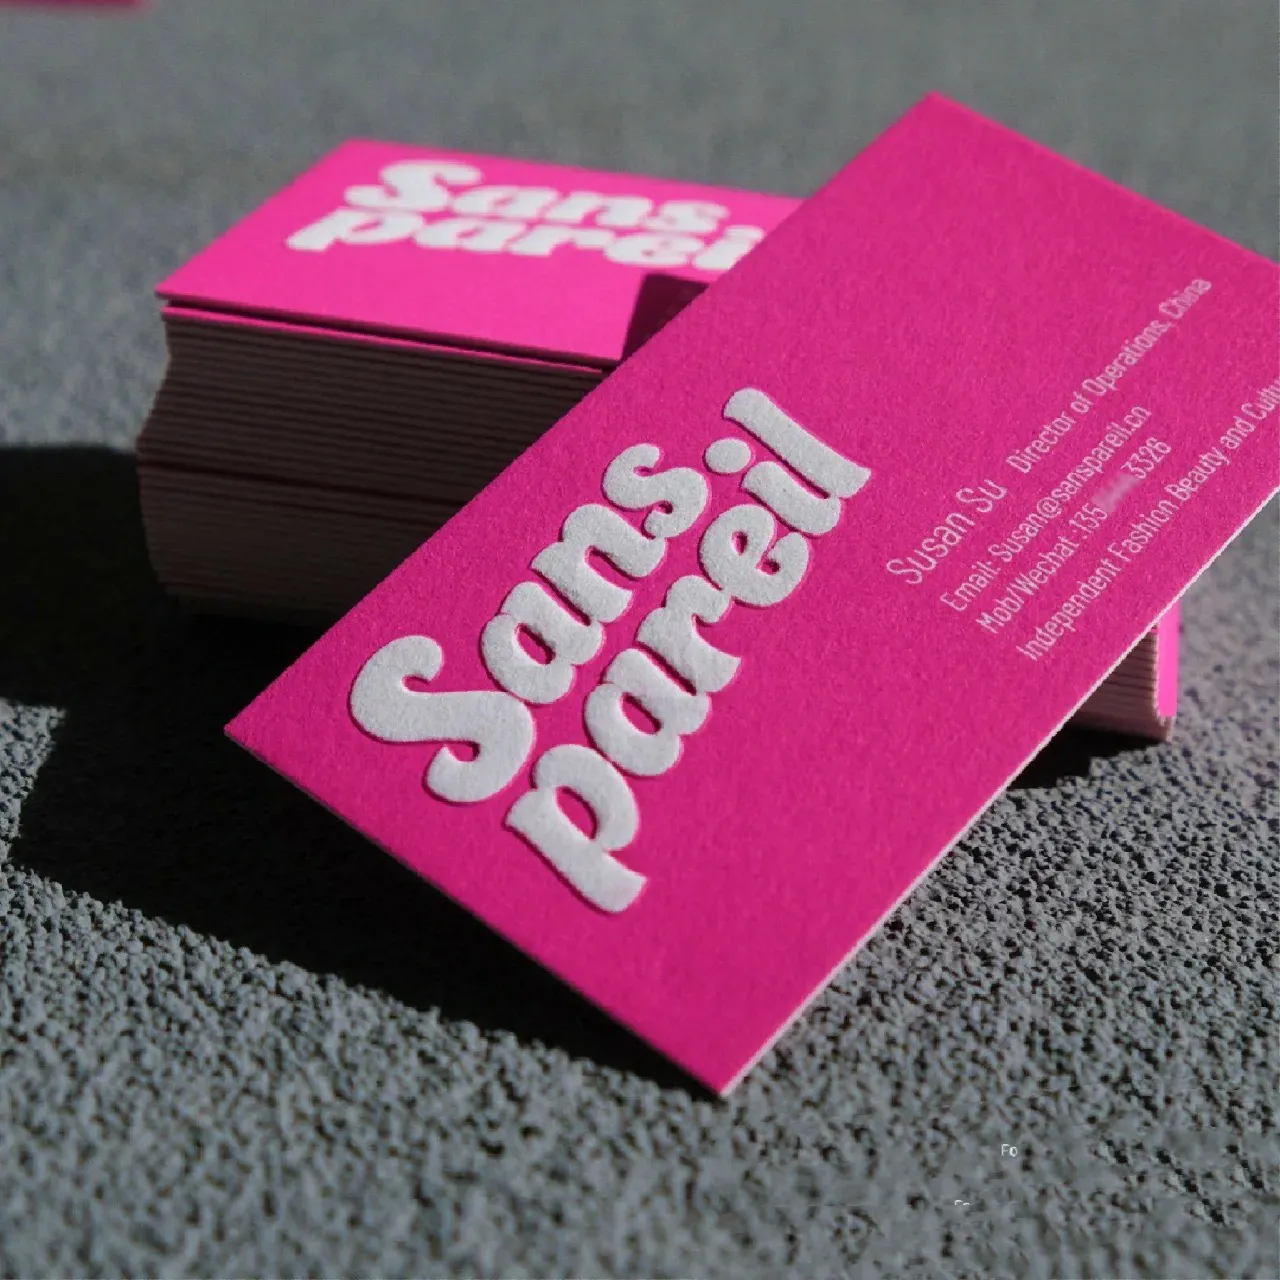 Lüks özel Logo tasarım baskı kabartmalı 600gsm pamuklu kağıt dokulu karton adı kartvizit